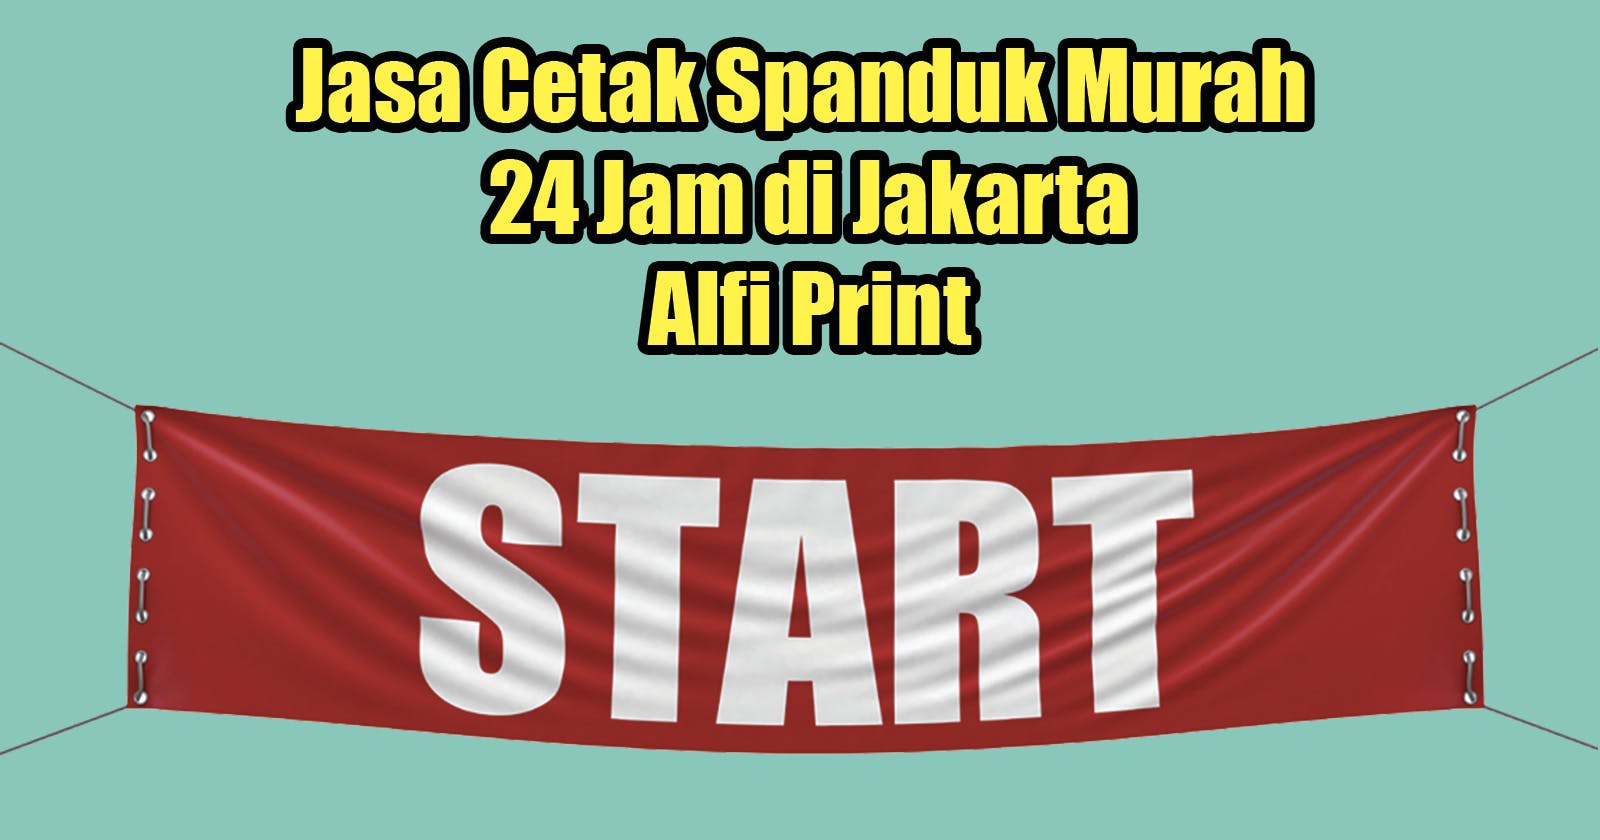 Jasa Cetak Spanduk Murah 24 Jam di Jakarta di Alfi Print